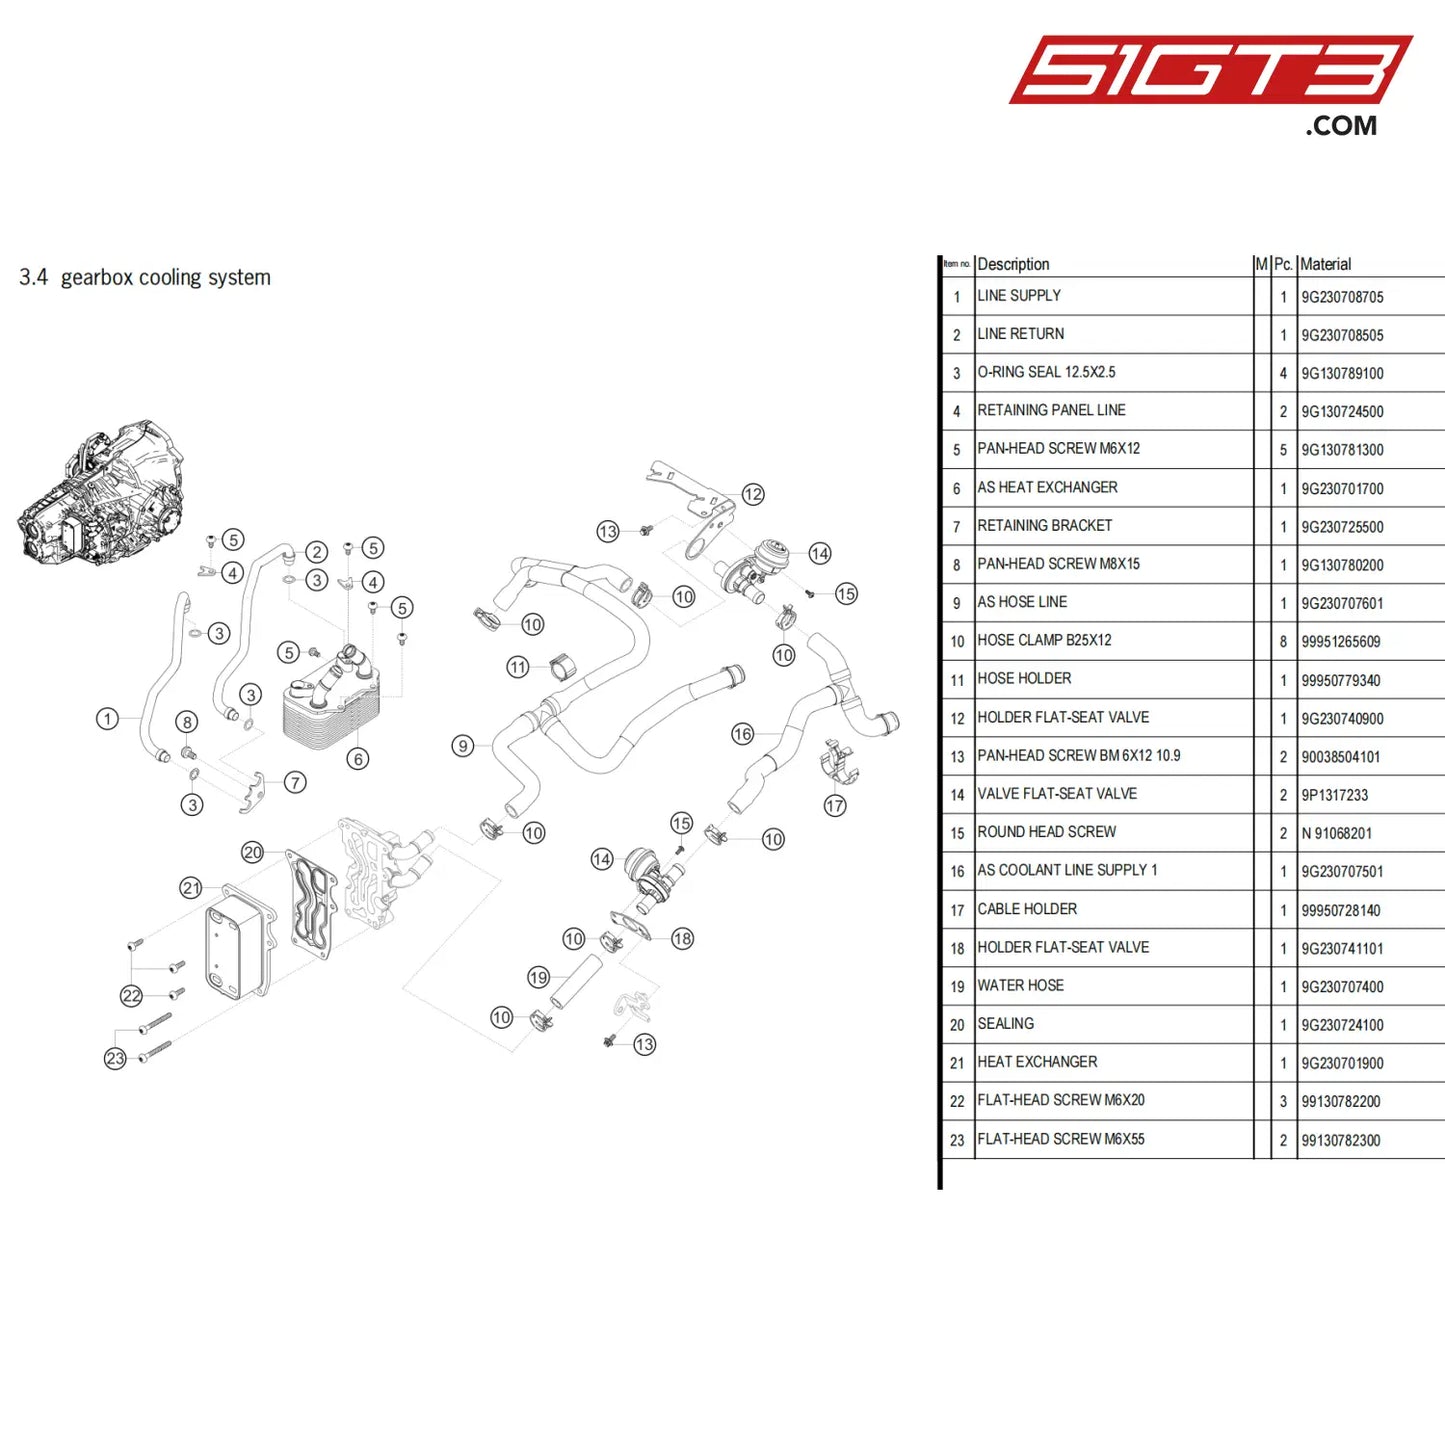 Holder Flat-Seat Valve - 9G230741101 [Porsche 718 Cayman Gt4 Clubsport] Gearbox Cooling System